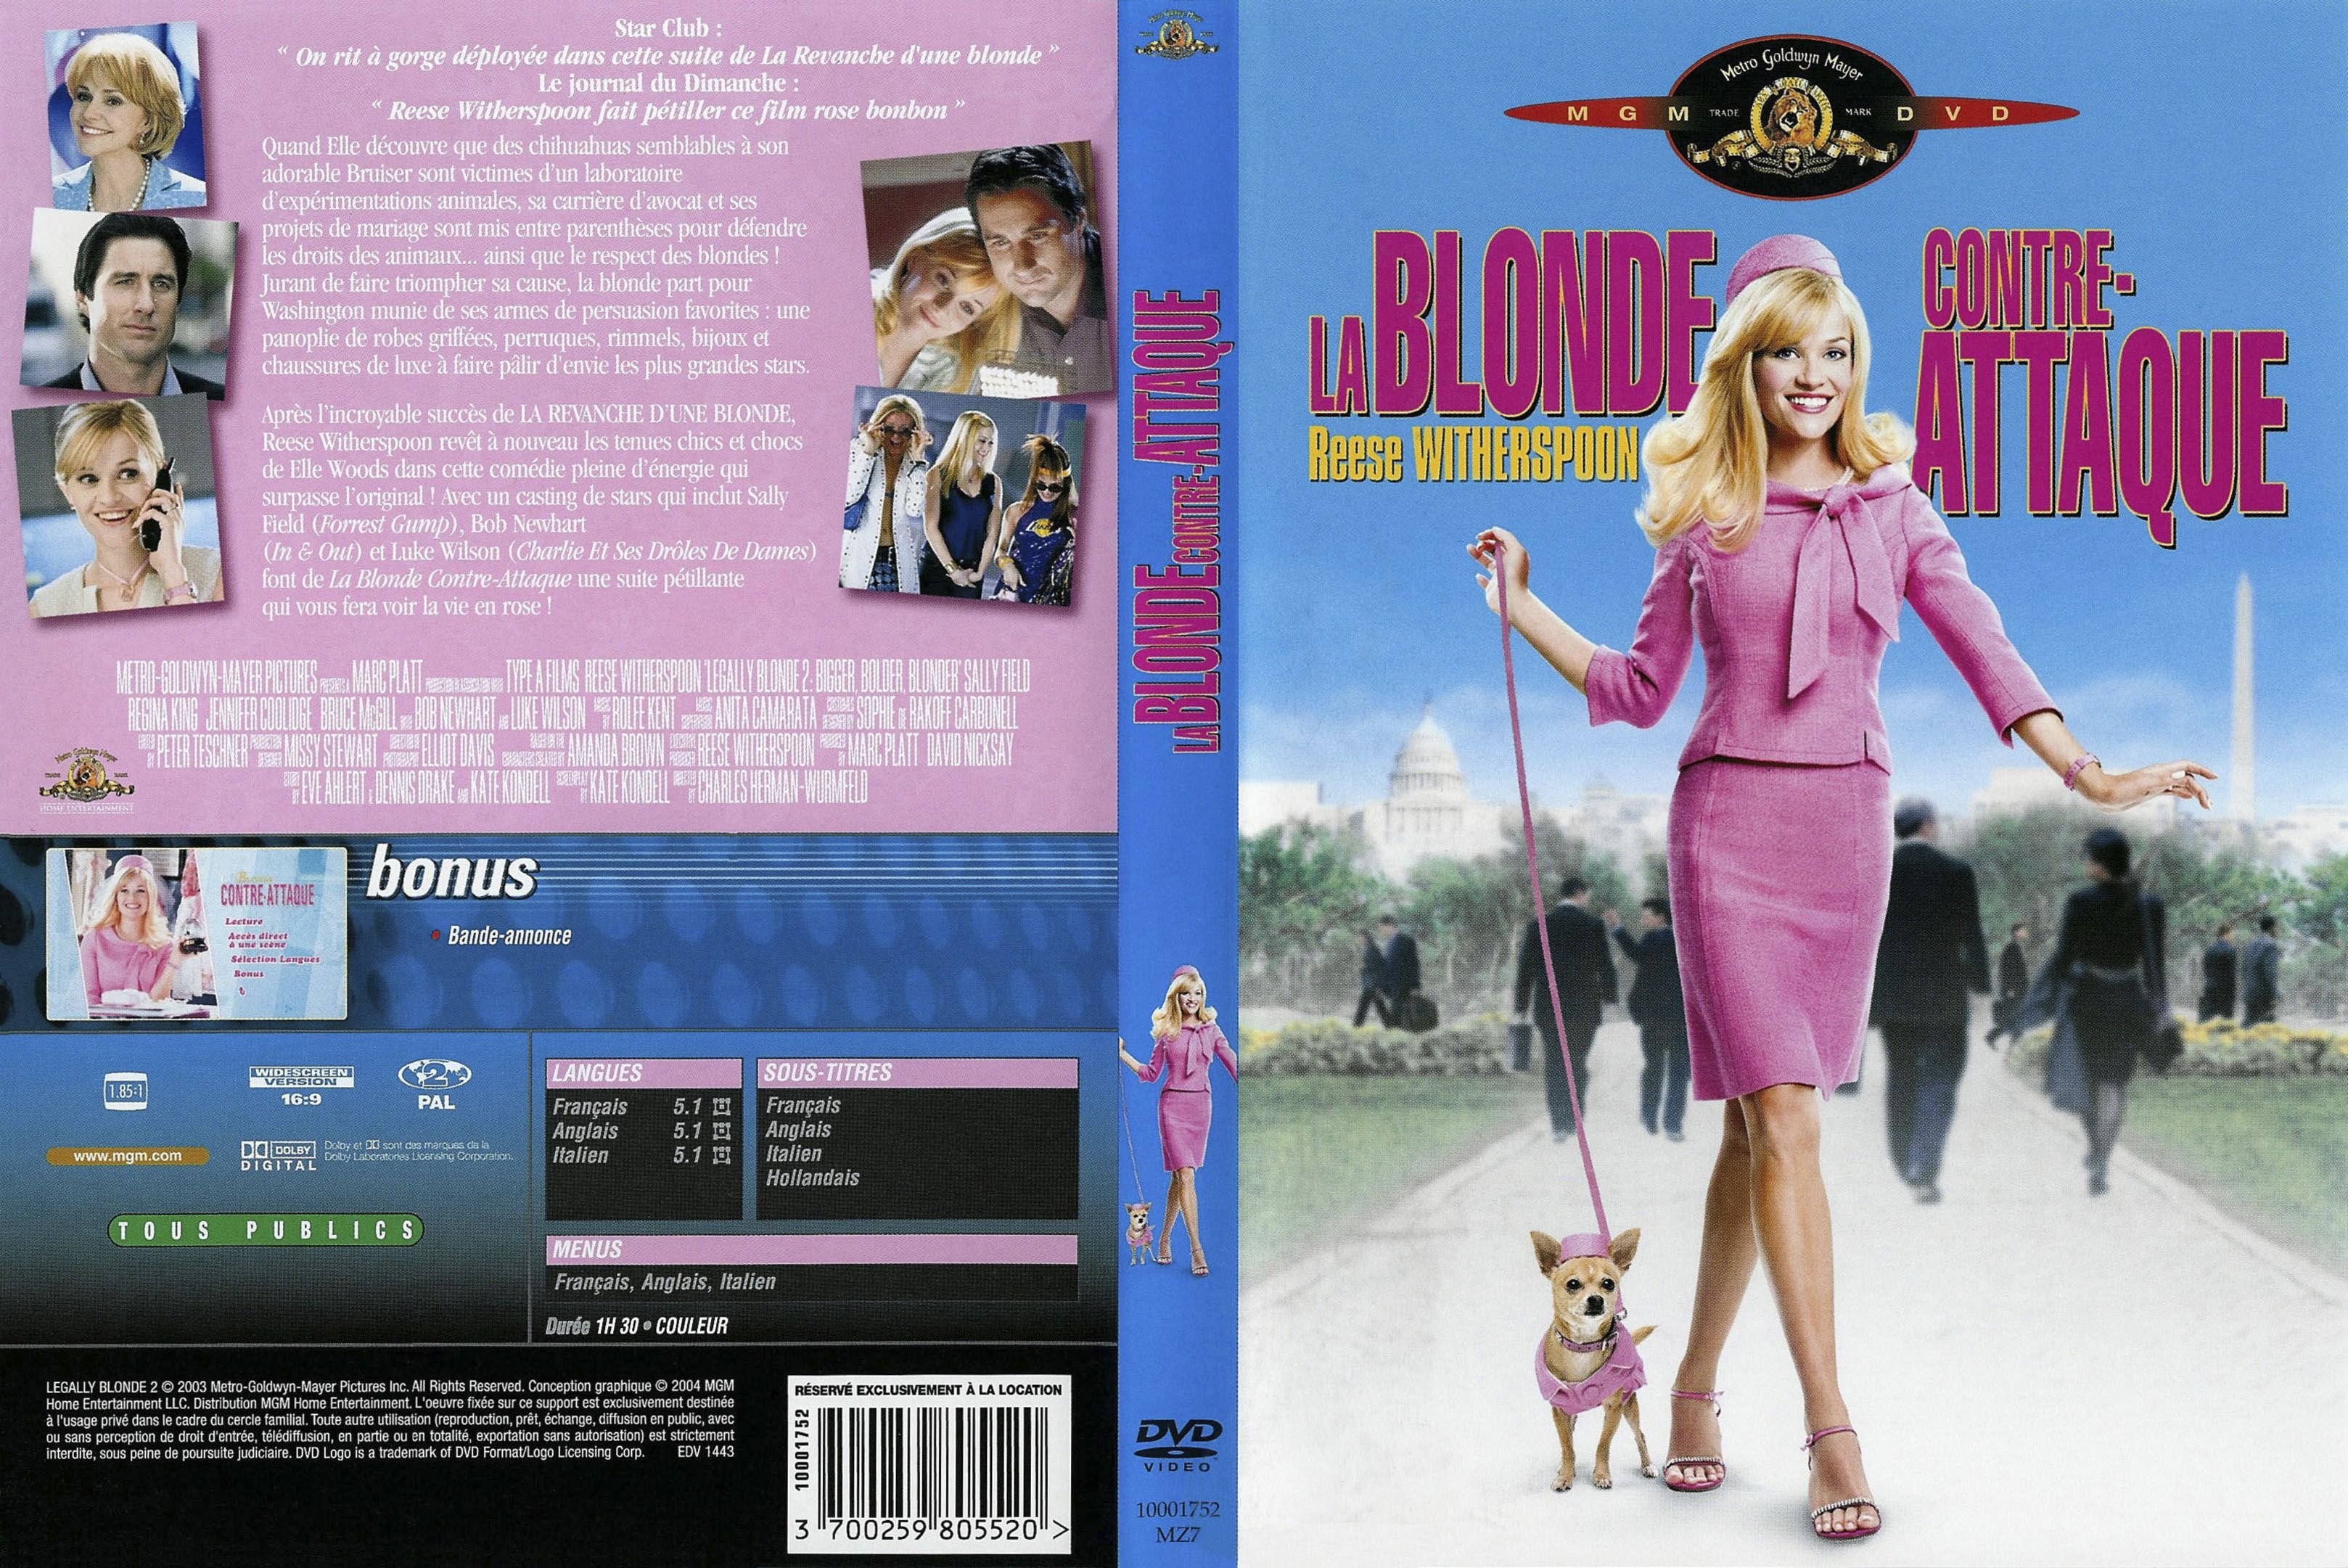 Jaquette DVD La blonde contre-attaque